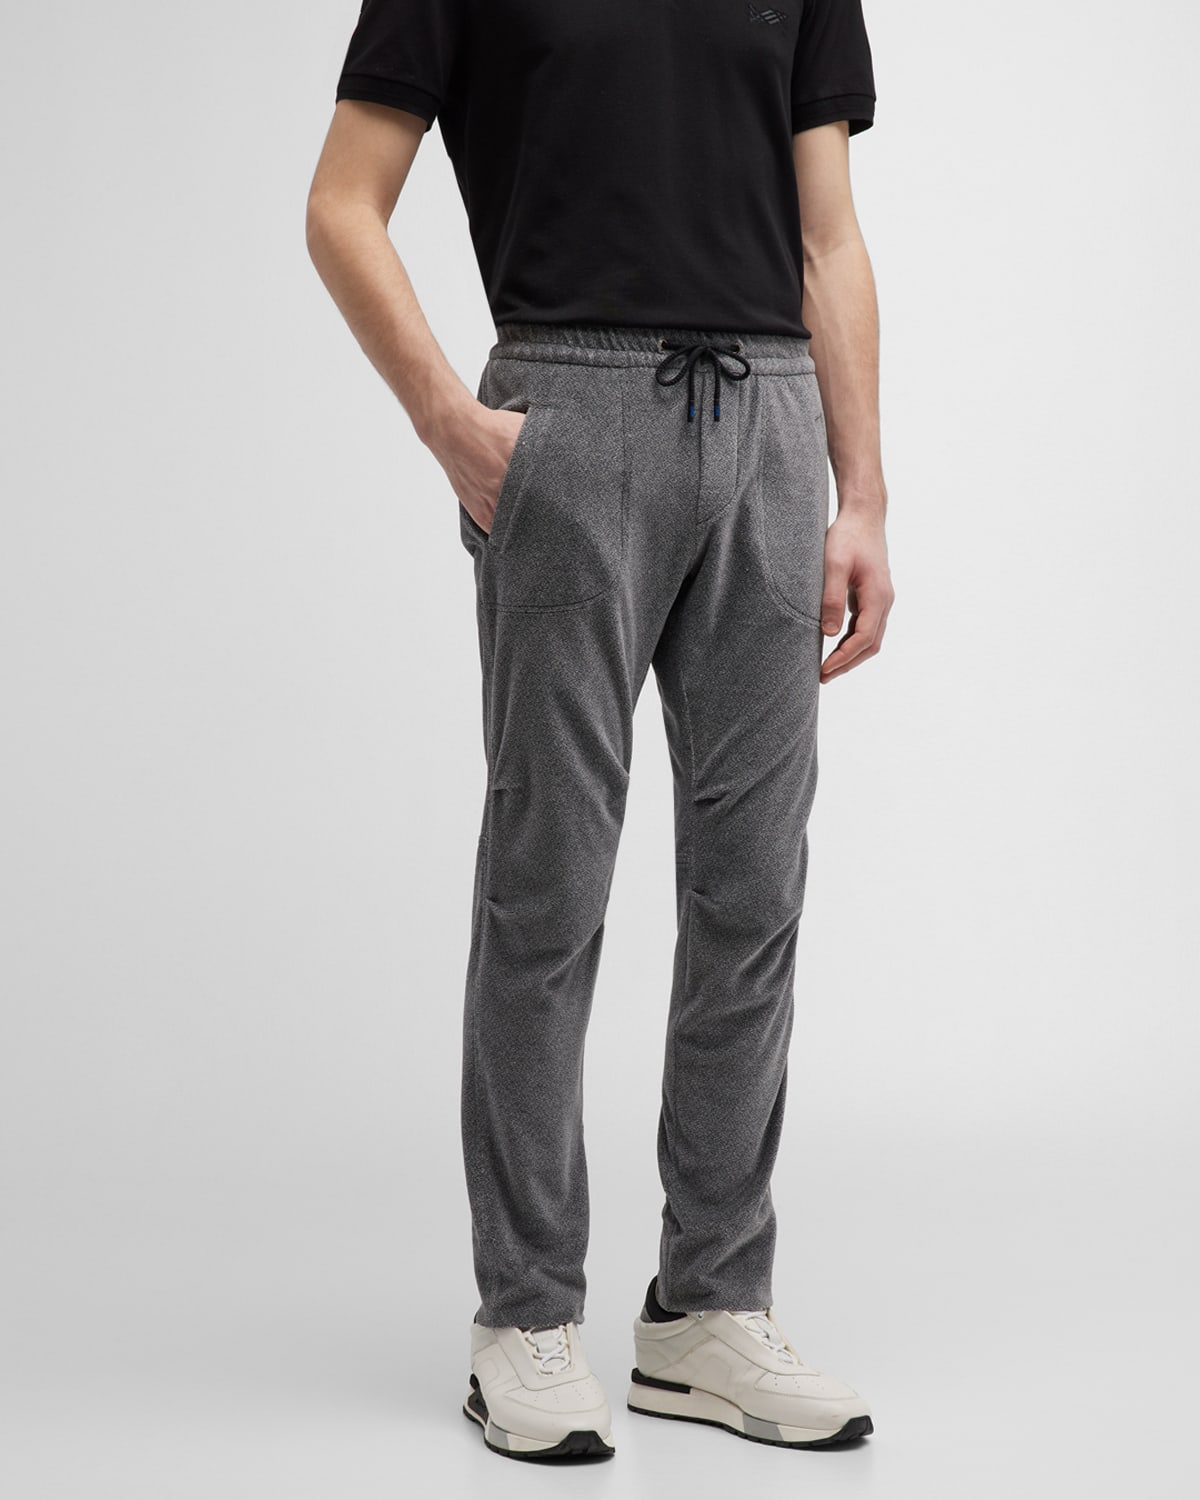 KNT Men's Gray Velvet Drawstring Pants